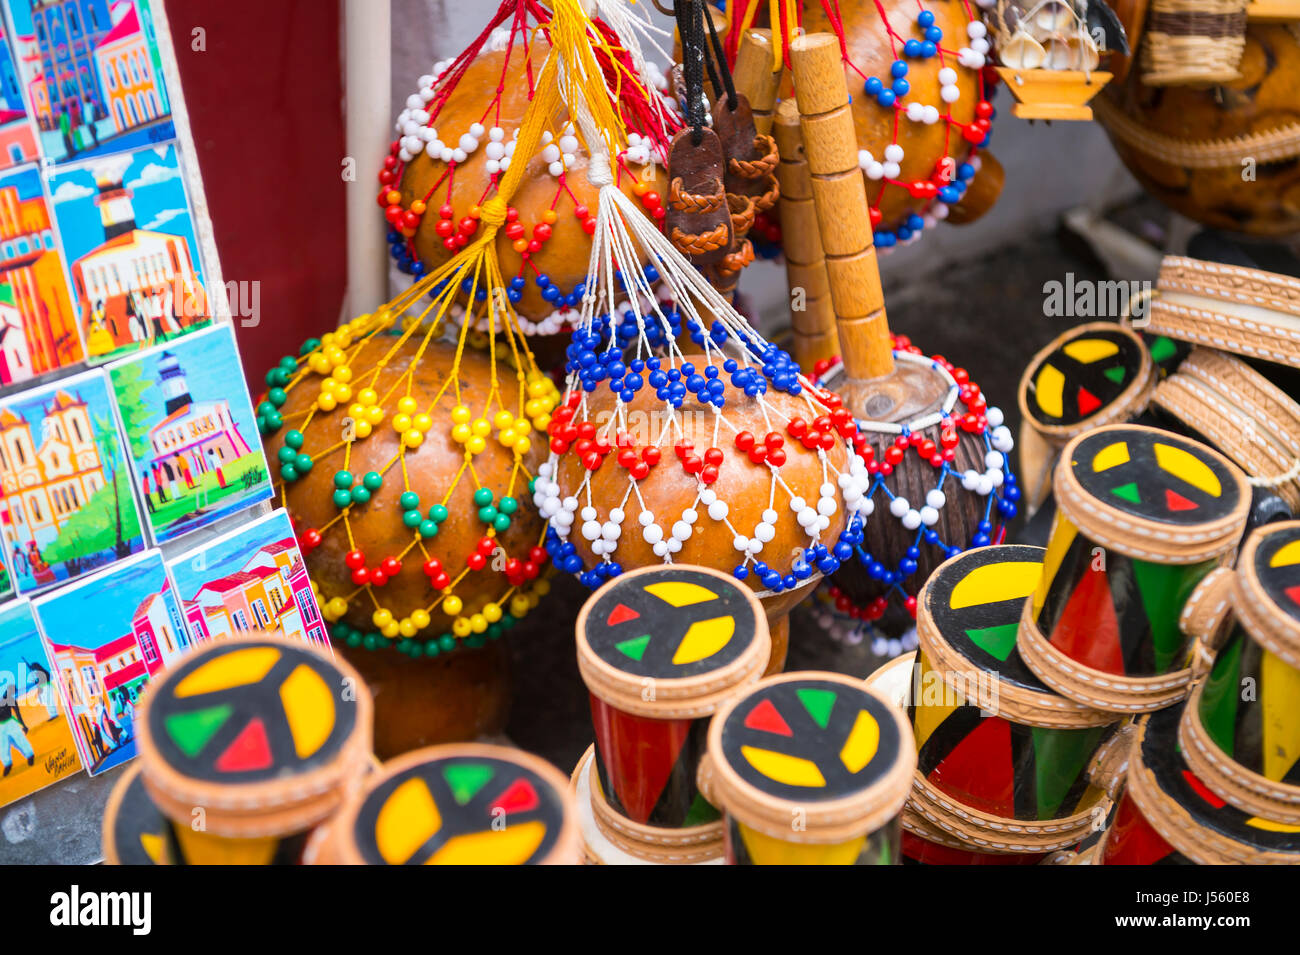 SALVADOR, Brasile - 9 Marzo 2017: un negozio di souvenir che vendono prodotti artigianali locali e Afro-brasiliano strumenti musicali nel centro storico di Pelourinho. Foto Stock